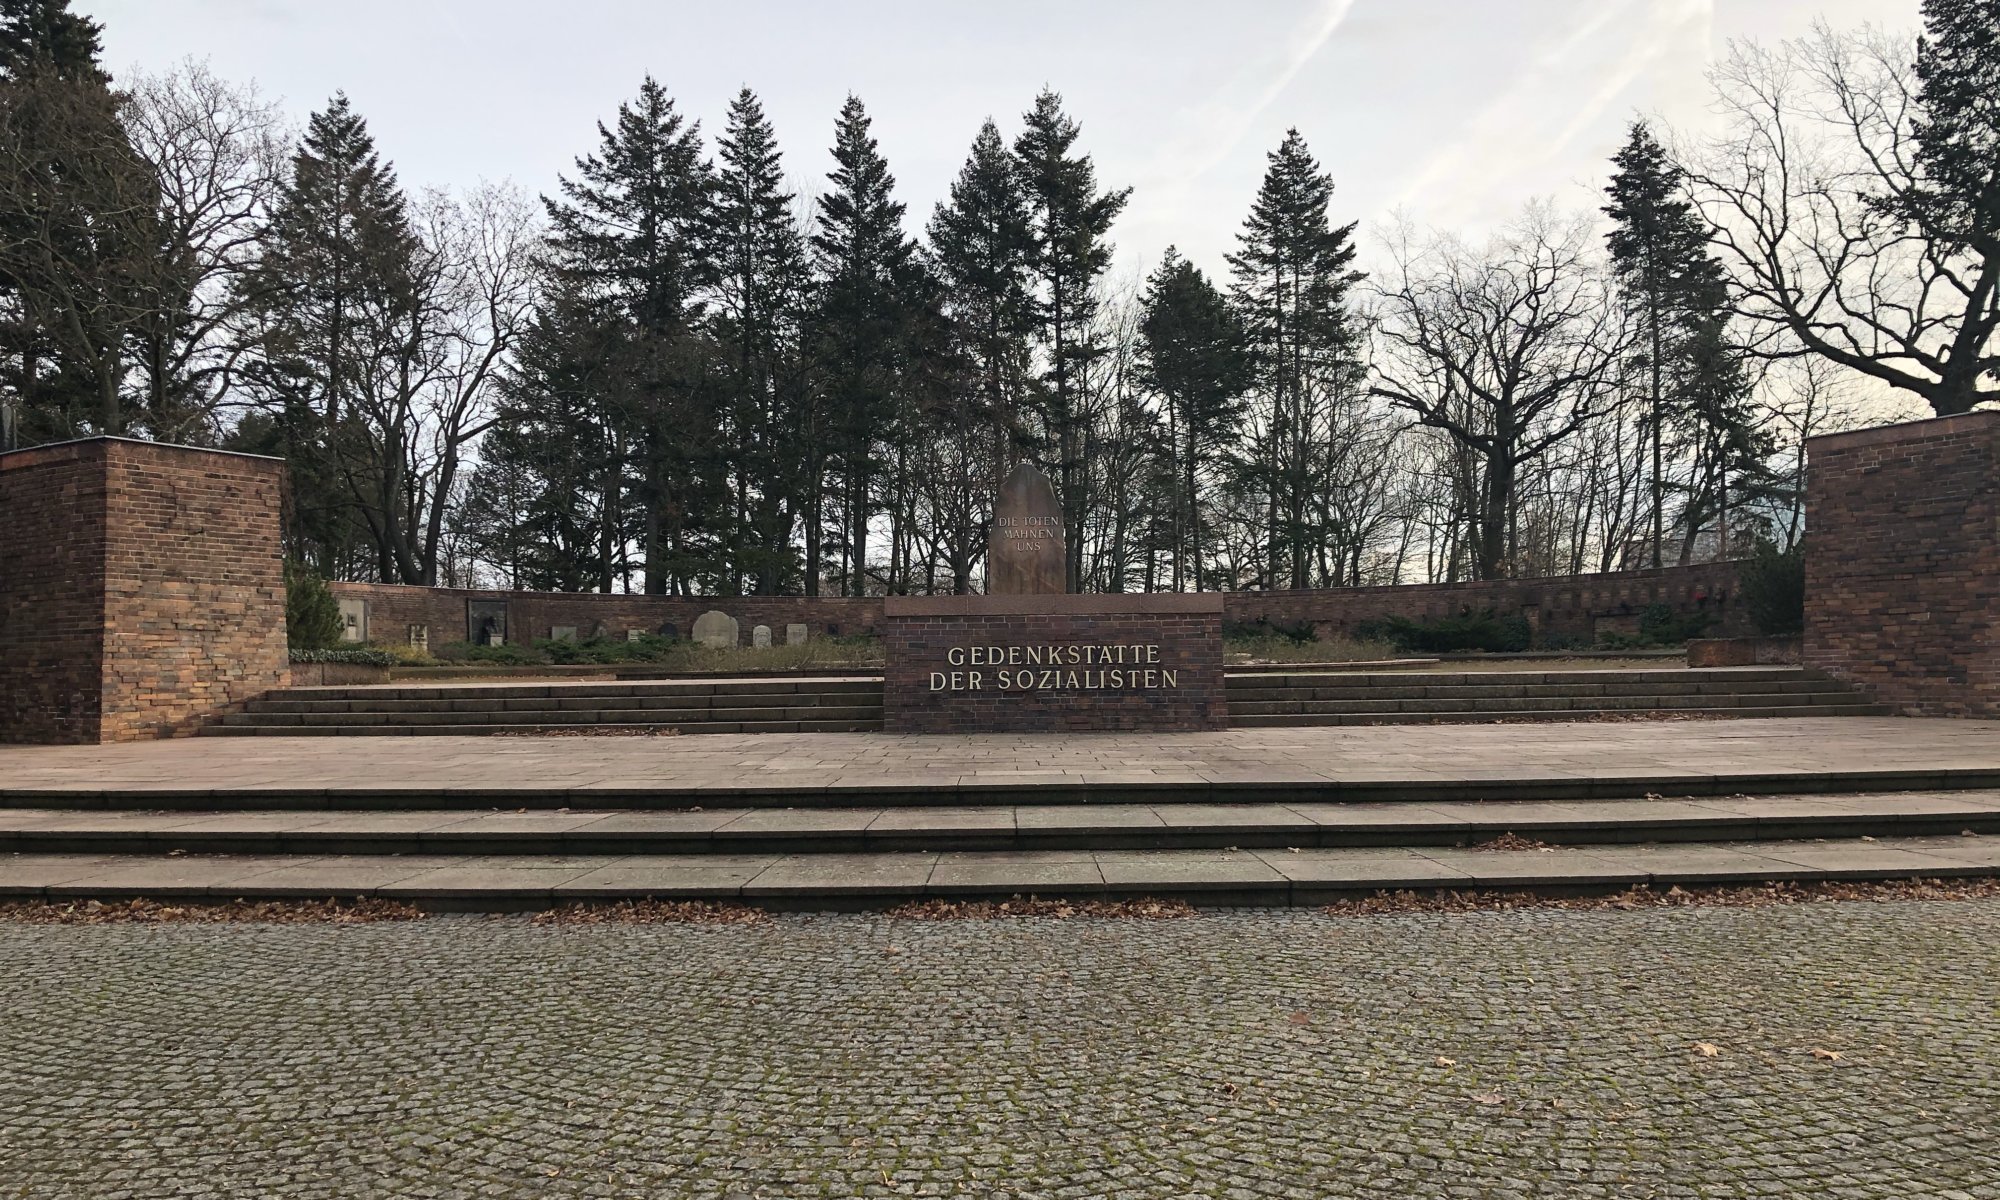 Gedenkstätte der Sozialisten, Berlin